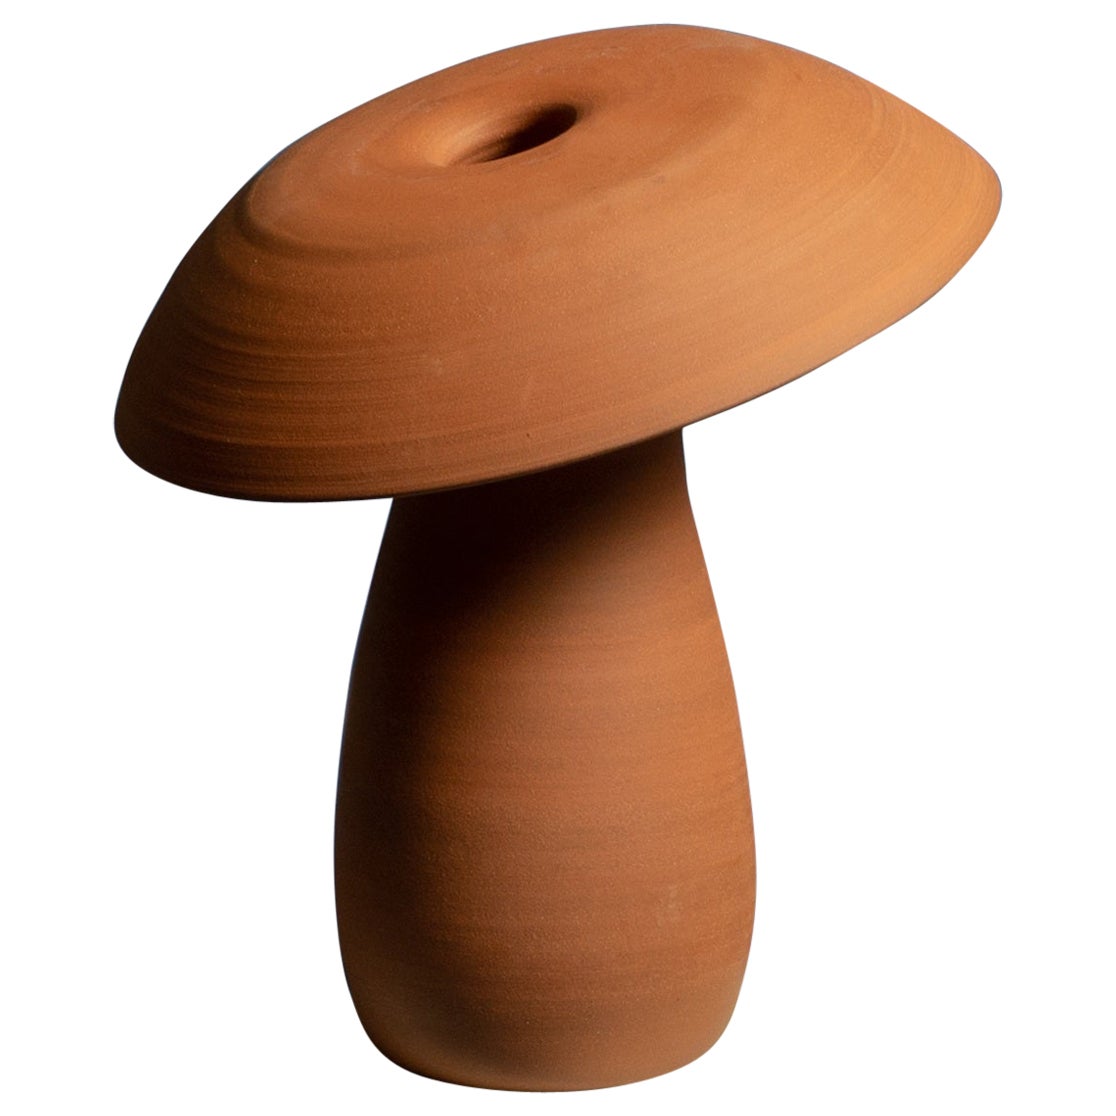 Petite lampe champignon en terre cuite brute de Nick Pourfard